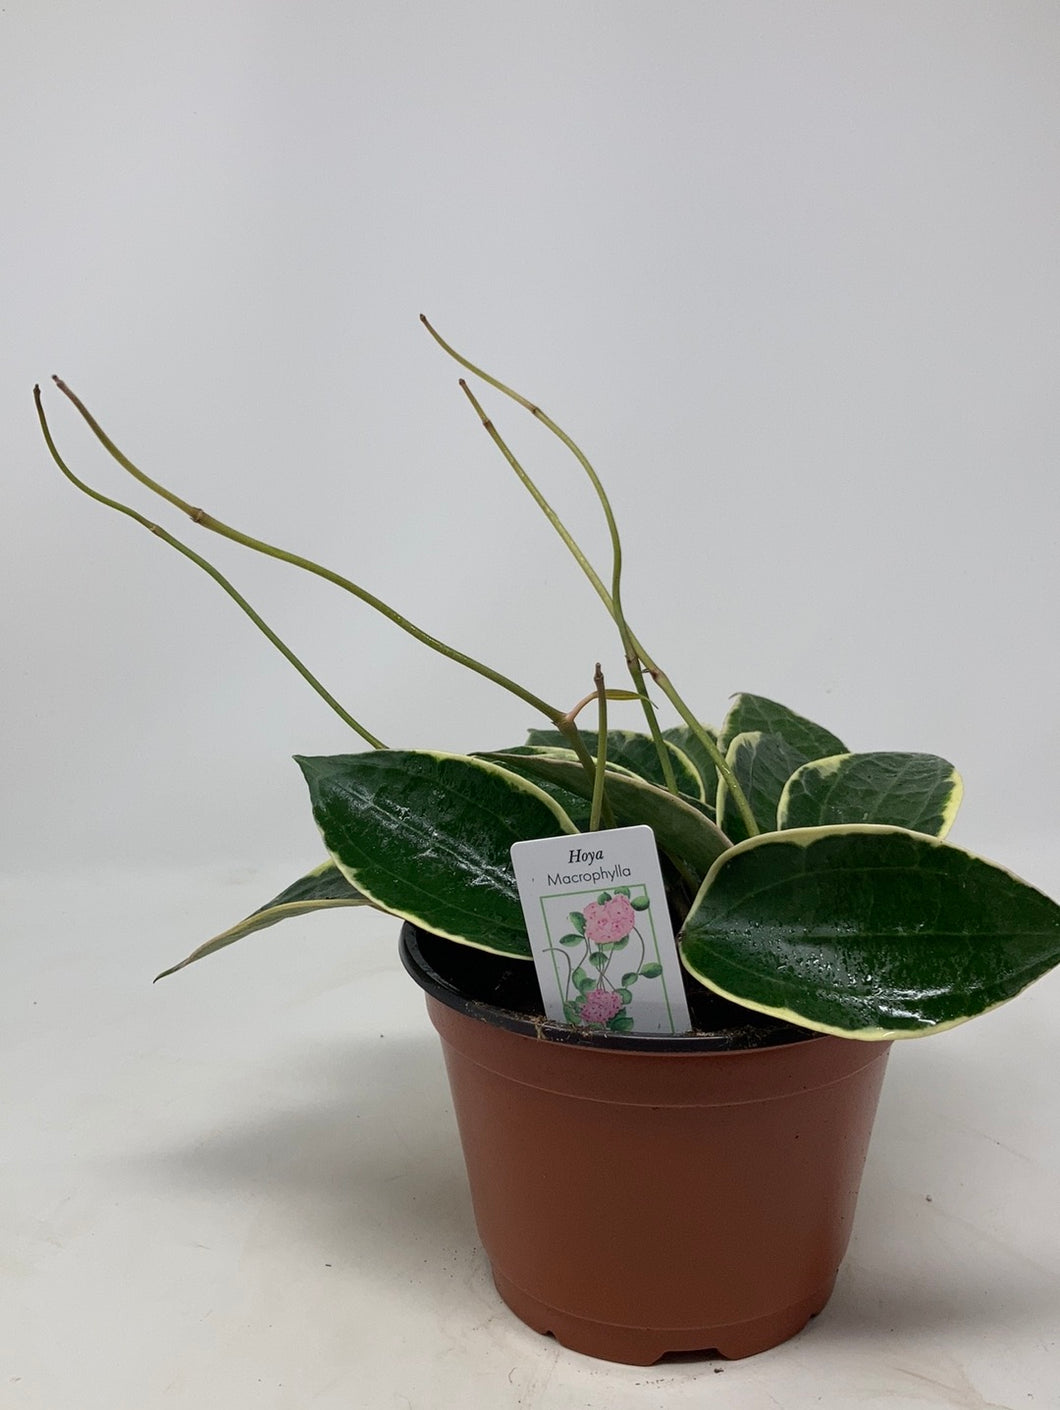 Hoya macrophylla 'Variegata'